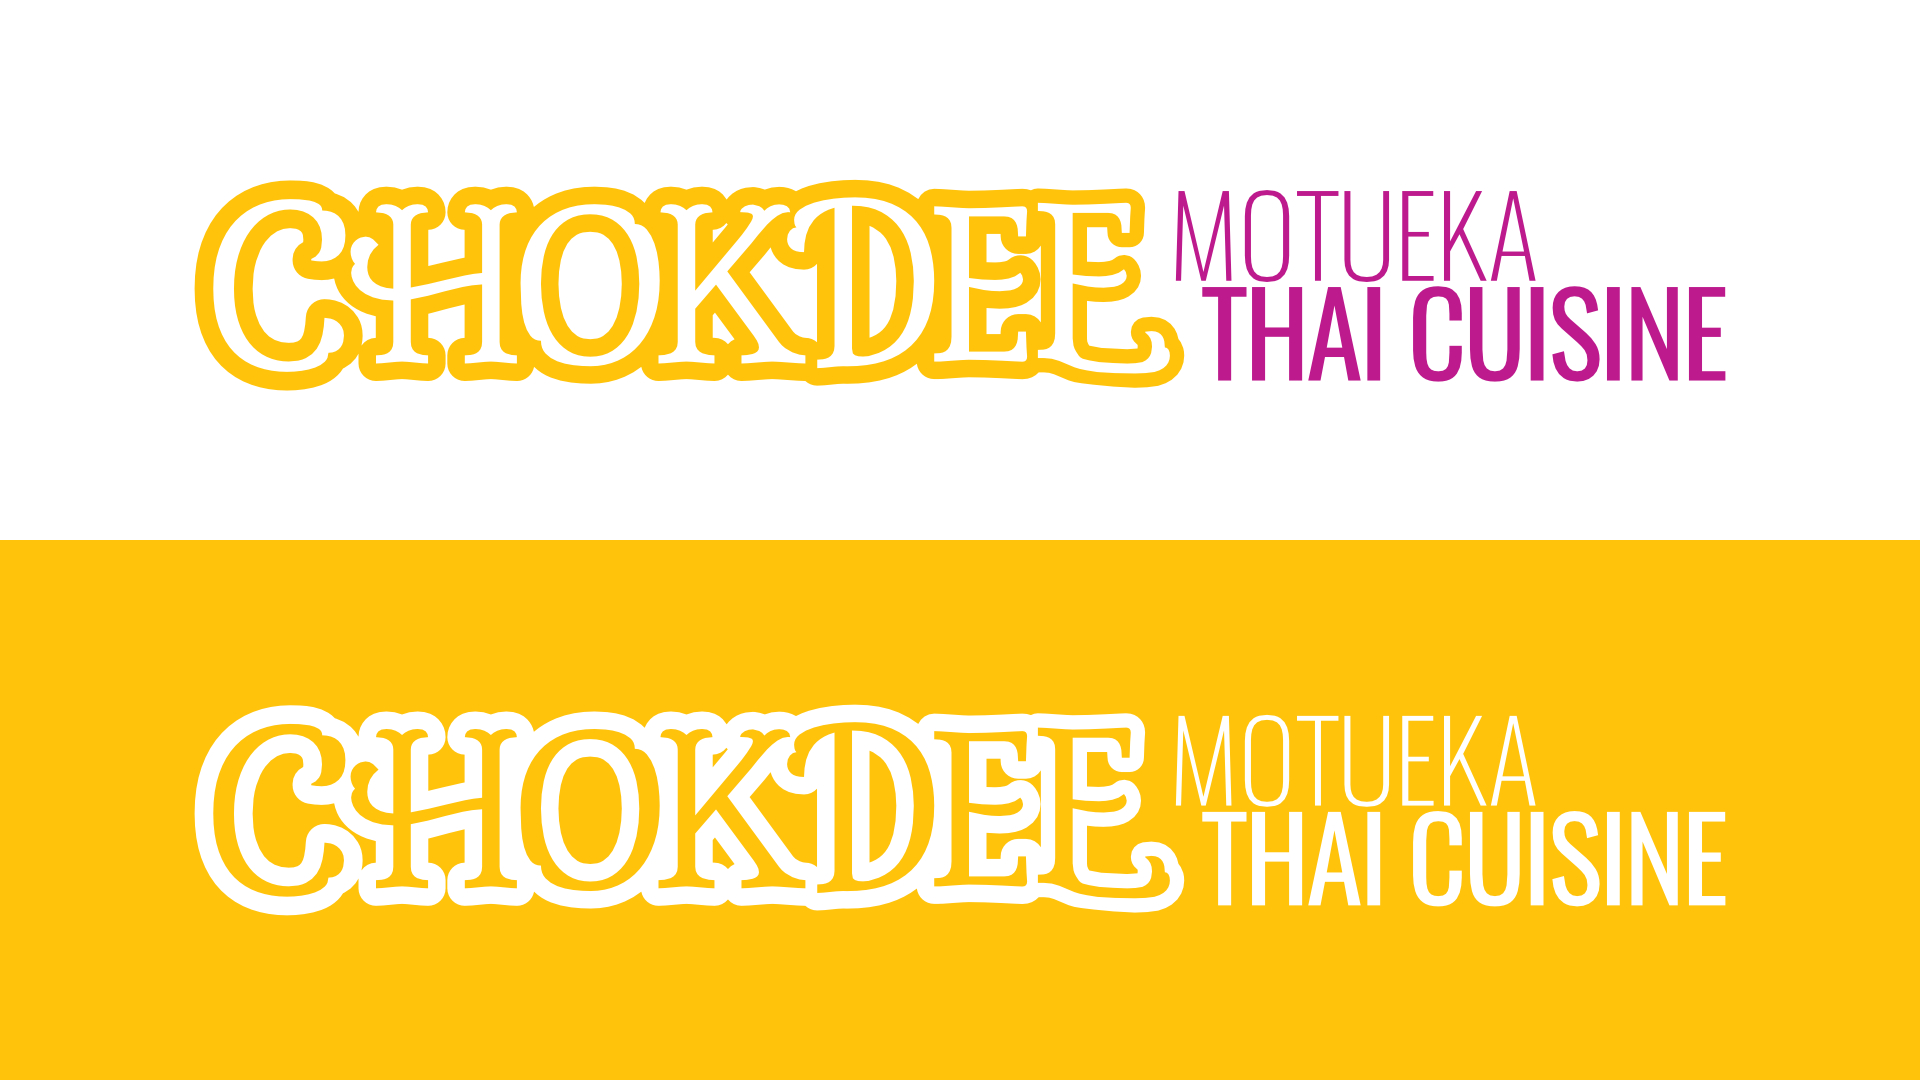 Chokdee Thai Cuisine logo